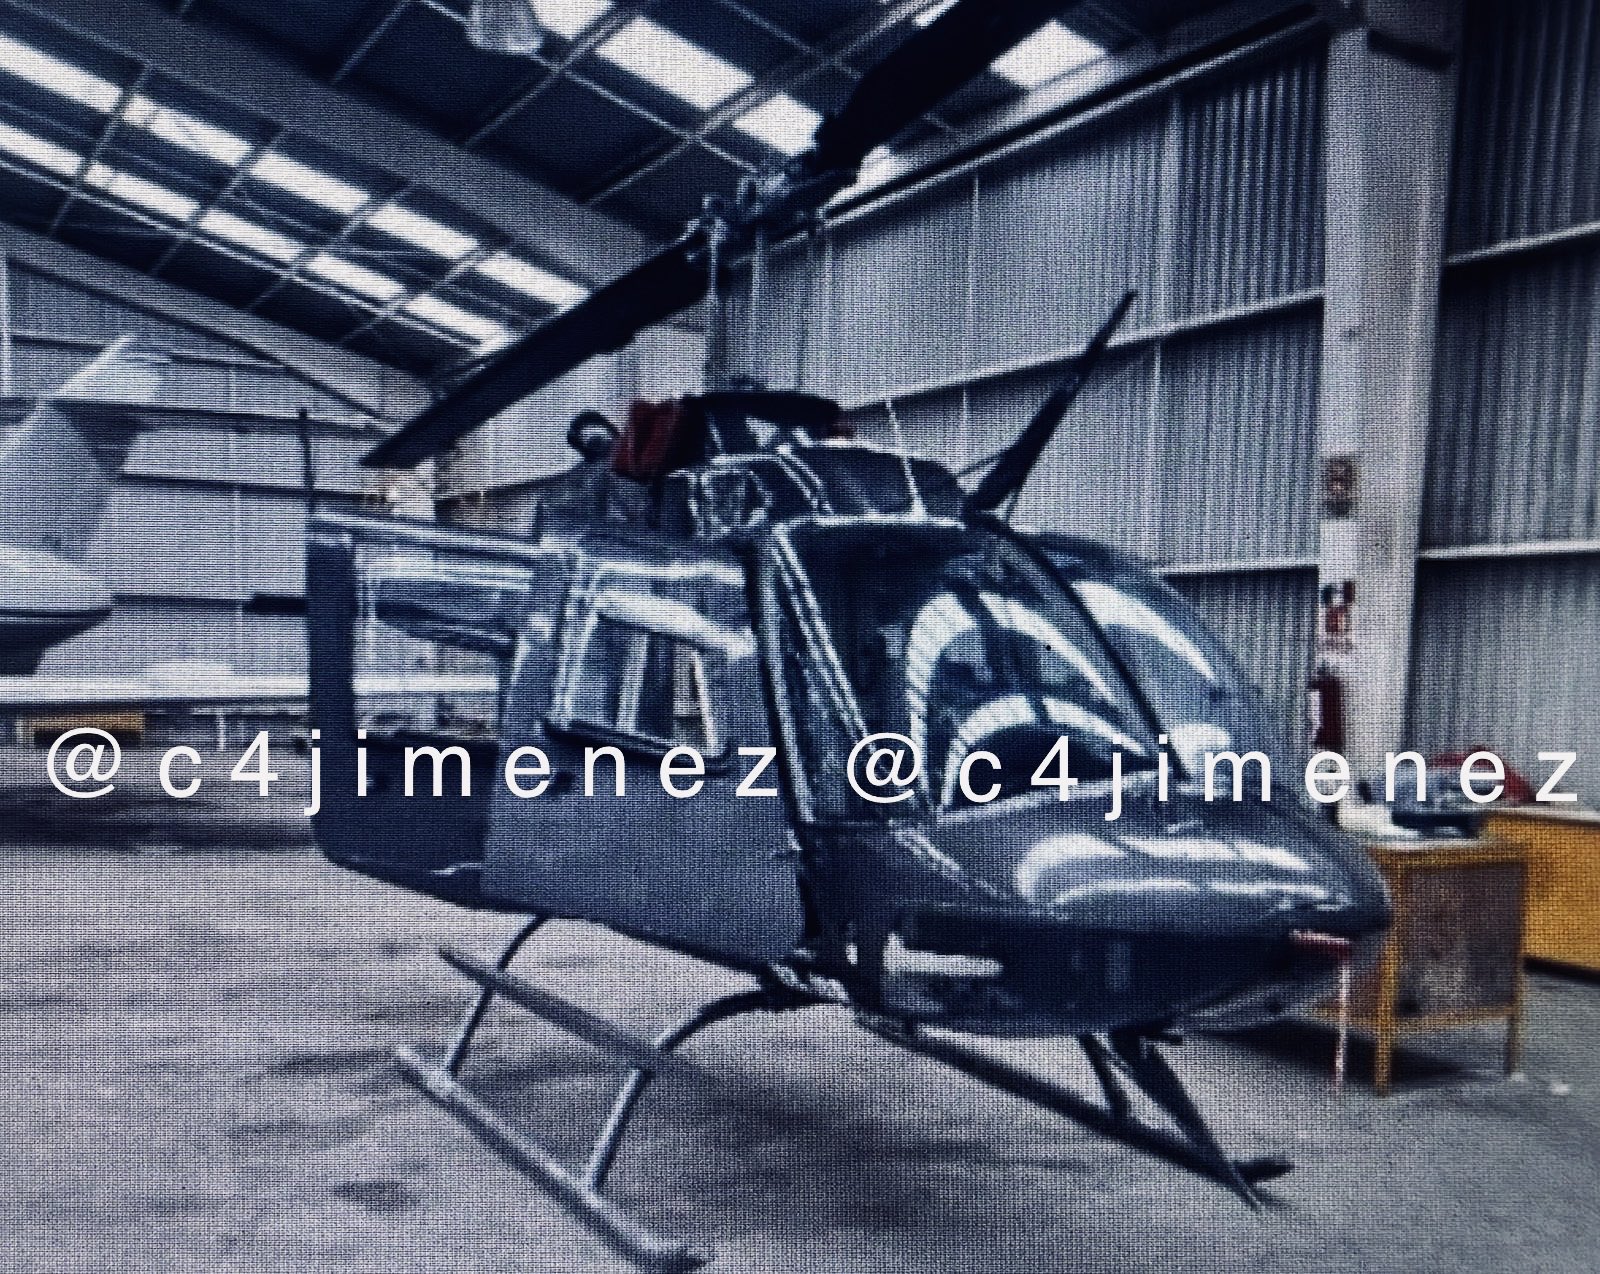 Robaron un helicóptero de un hangar del AICM: el dueño fue reportado como desaparecido 